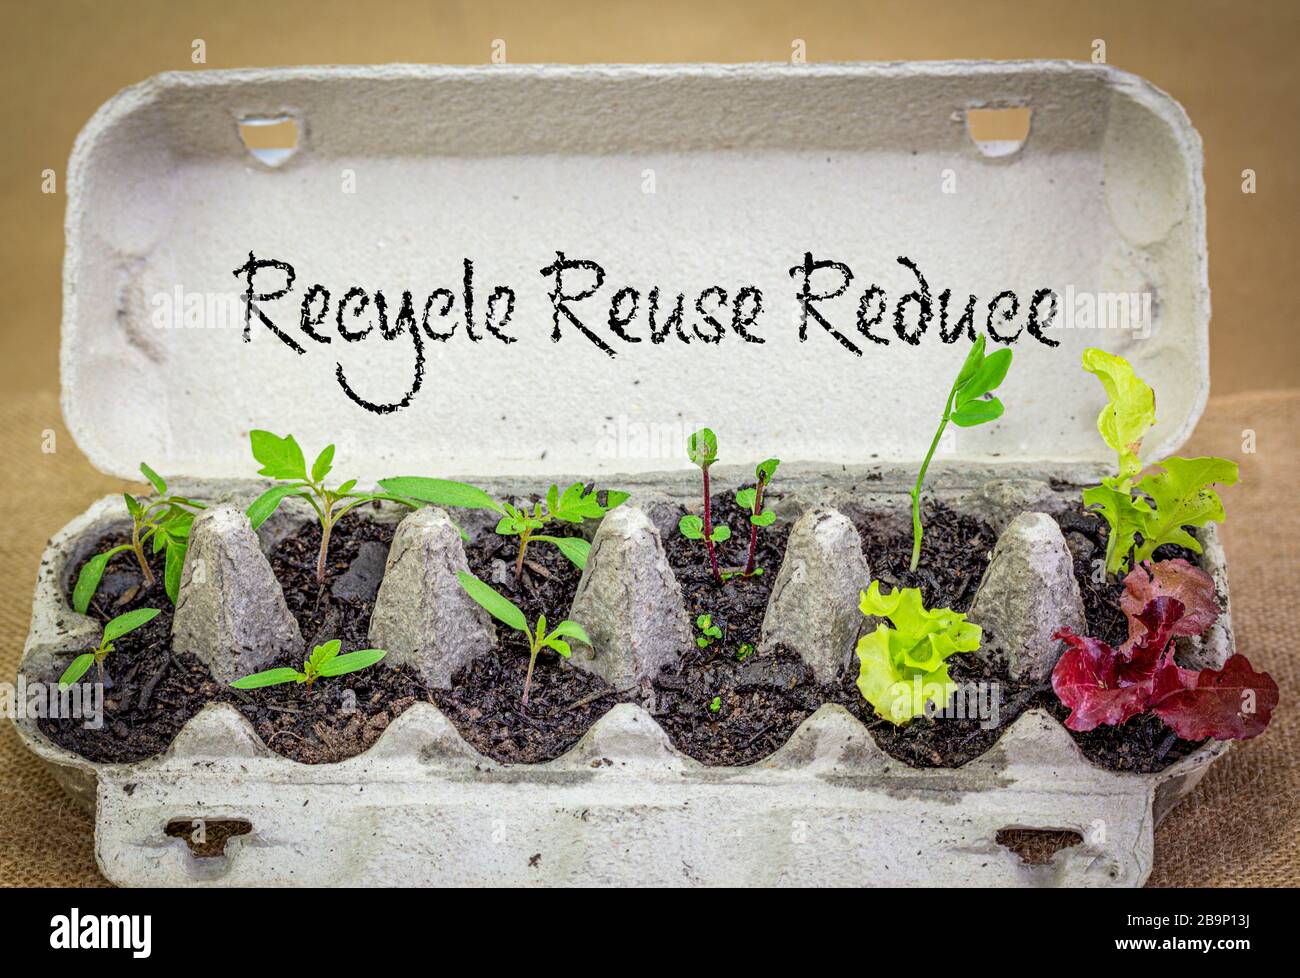 Authentische wiederverwendete Eikiste, die recycelt wird, um pflanzlichen Setzling anzubauen, mit Recycling, Wiederverwendung und weniger Text. Stockfoto